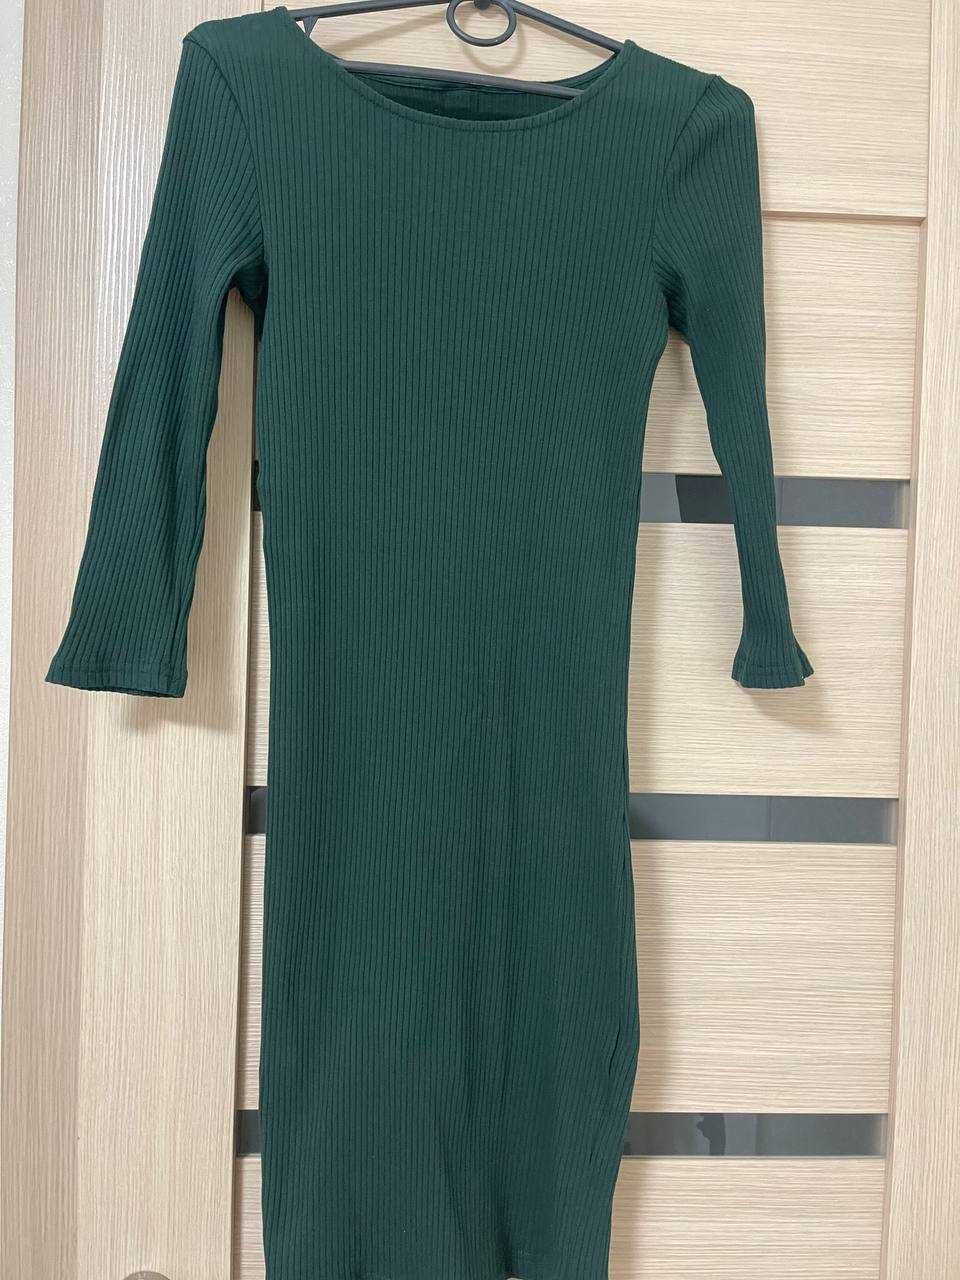 Платье резинка базовое по фигуре в обтяжку  бутылочно зеленый